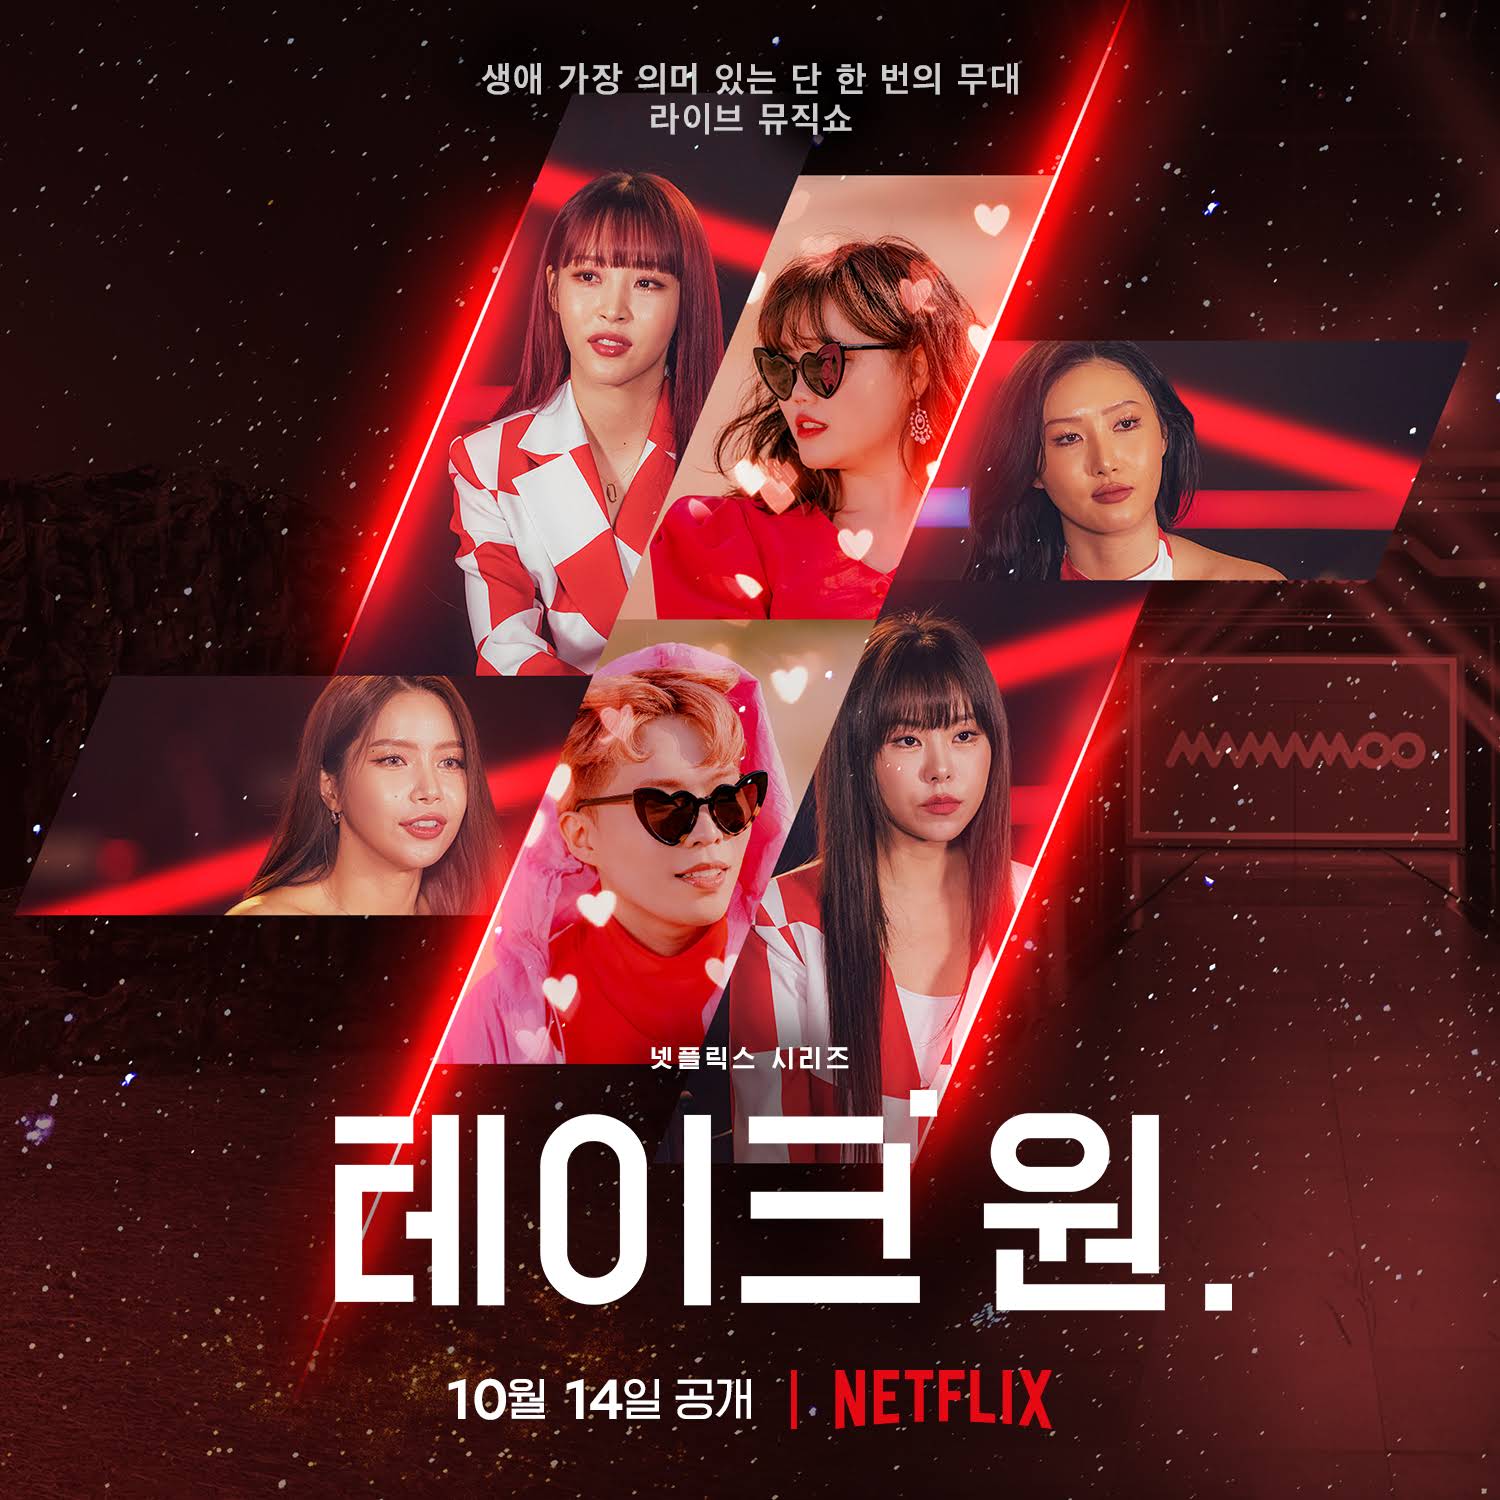 show de variedades de música coreana take 1 chegando à netflix em outubro de 2022 poster 2